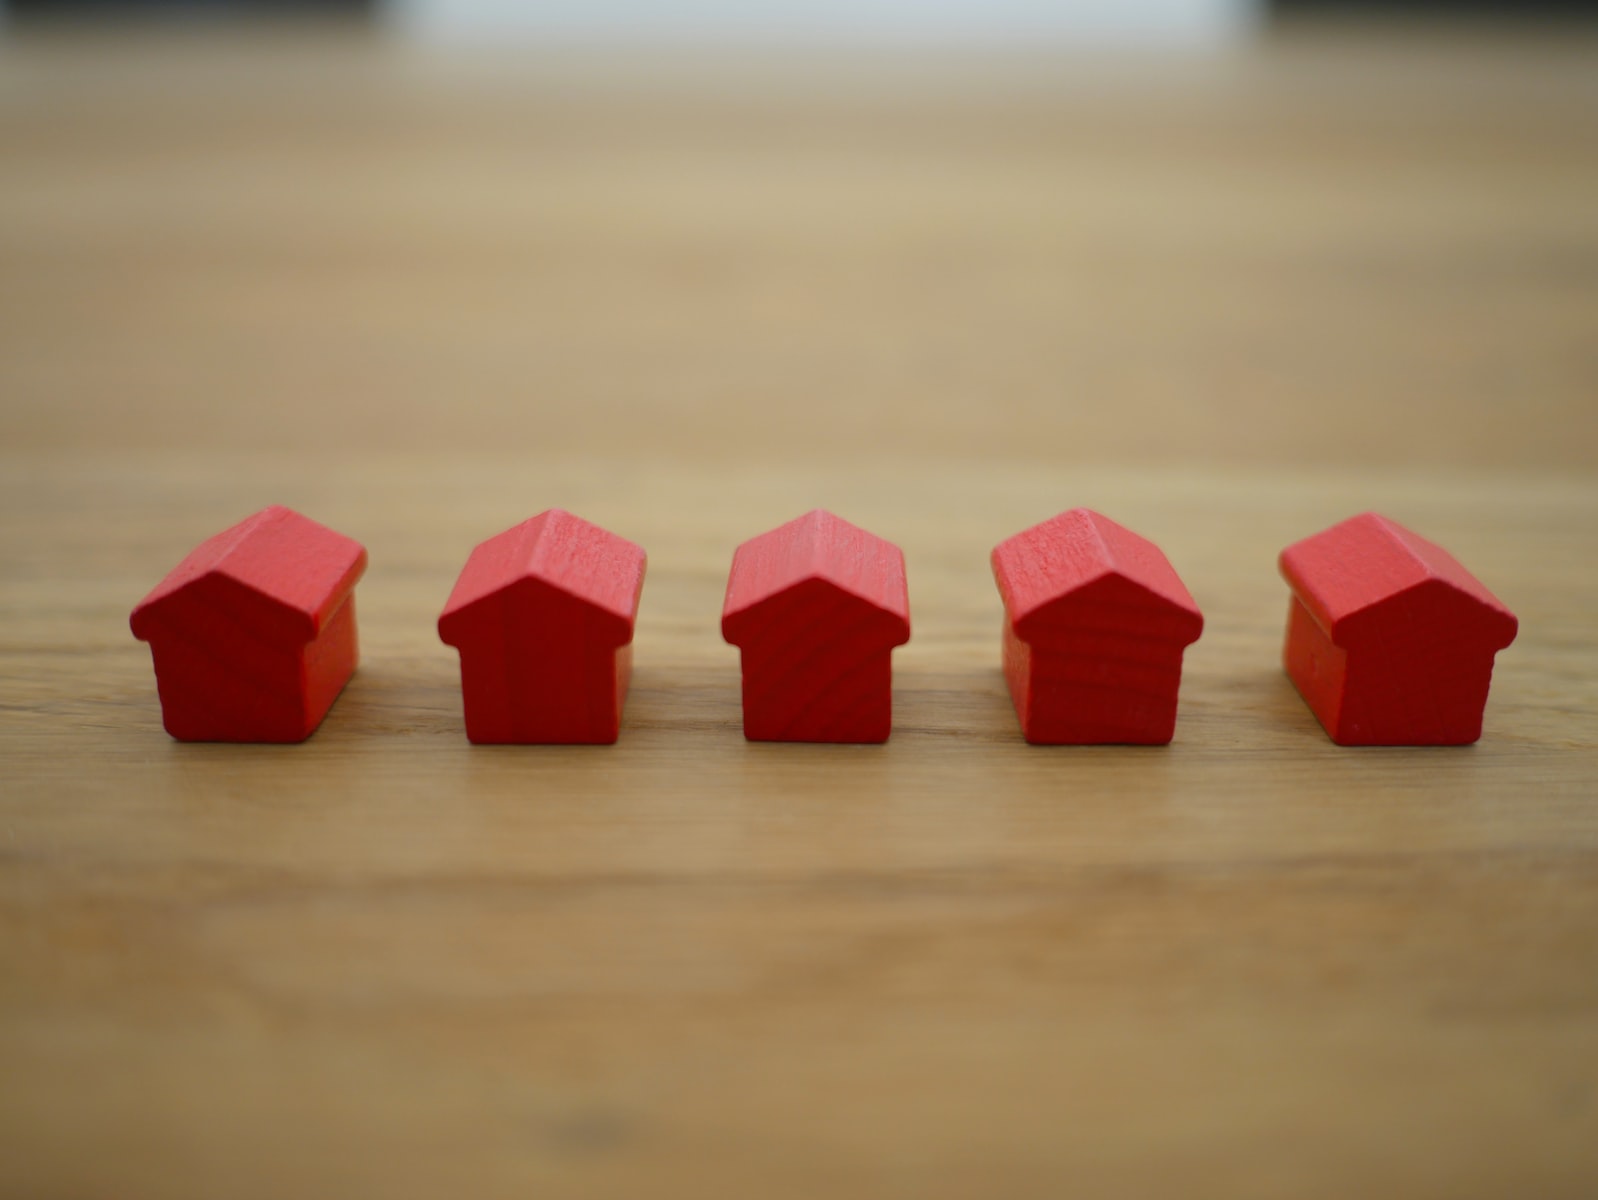 Wannonce immobilier : un bon choix pour vendre ou acheter un bien immobilier ?